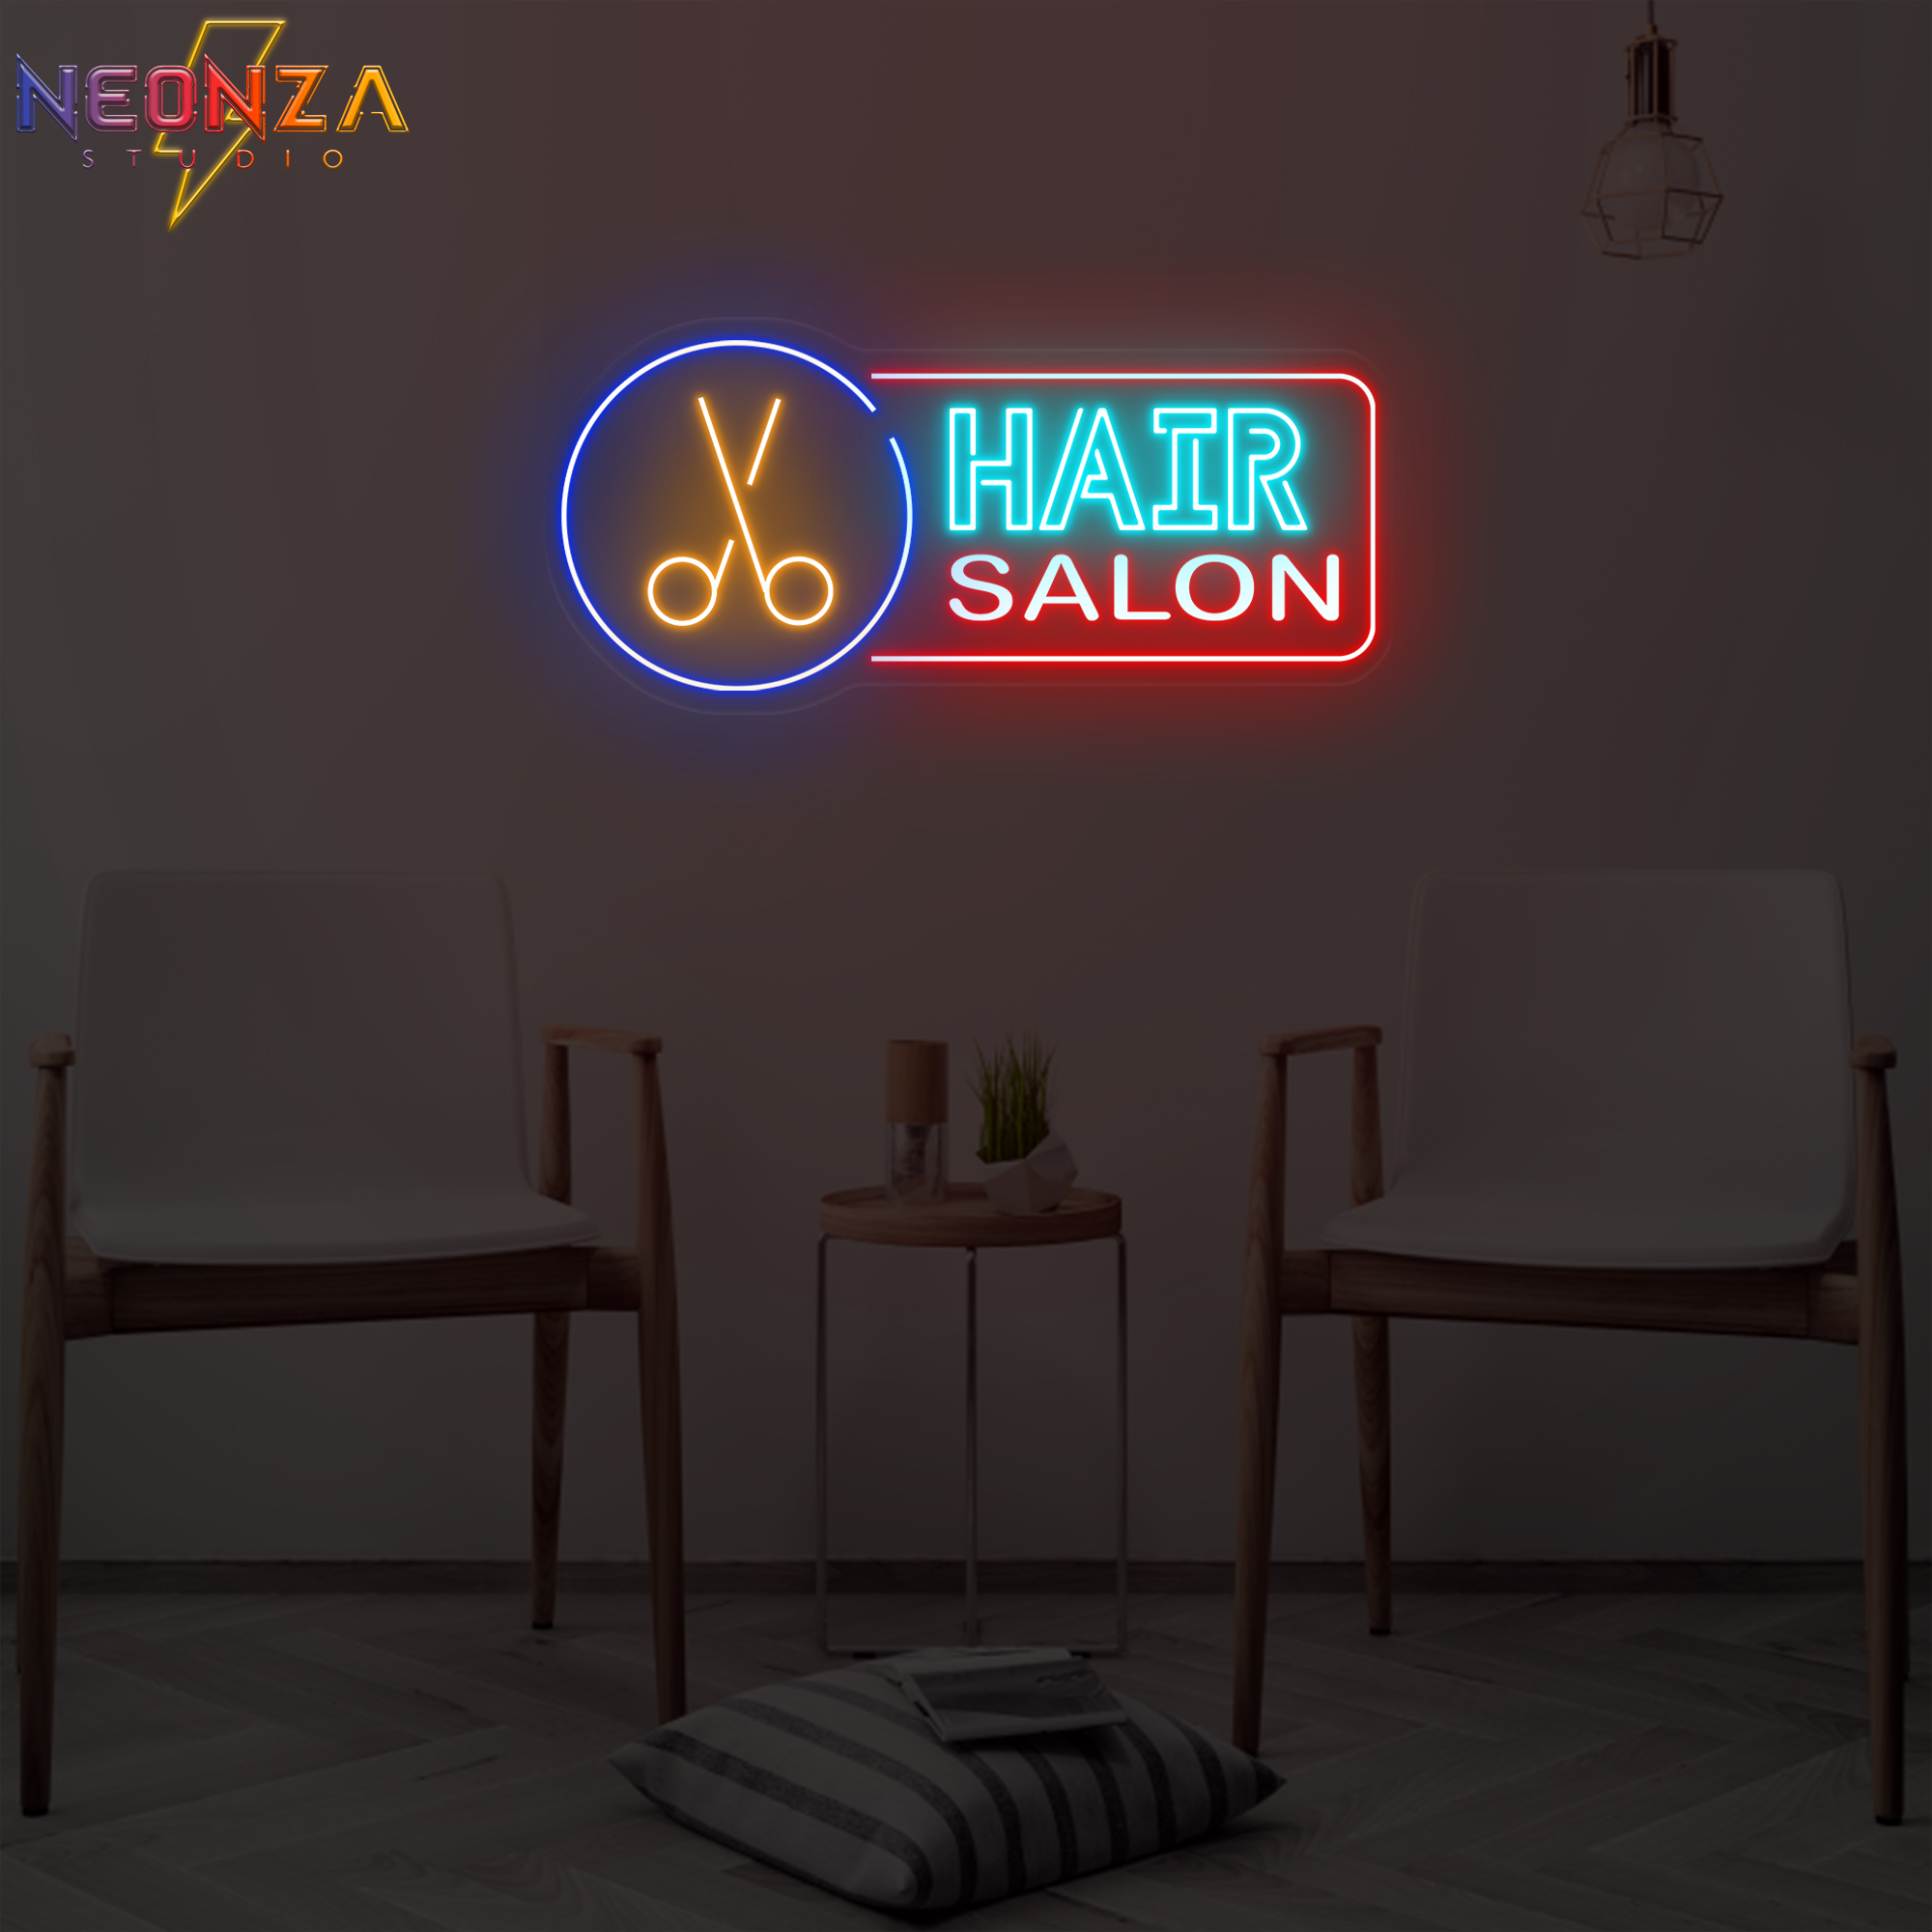 Buy Hair Salon Neon Sign Online India – acrylicsheetsindia